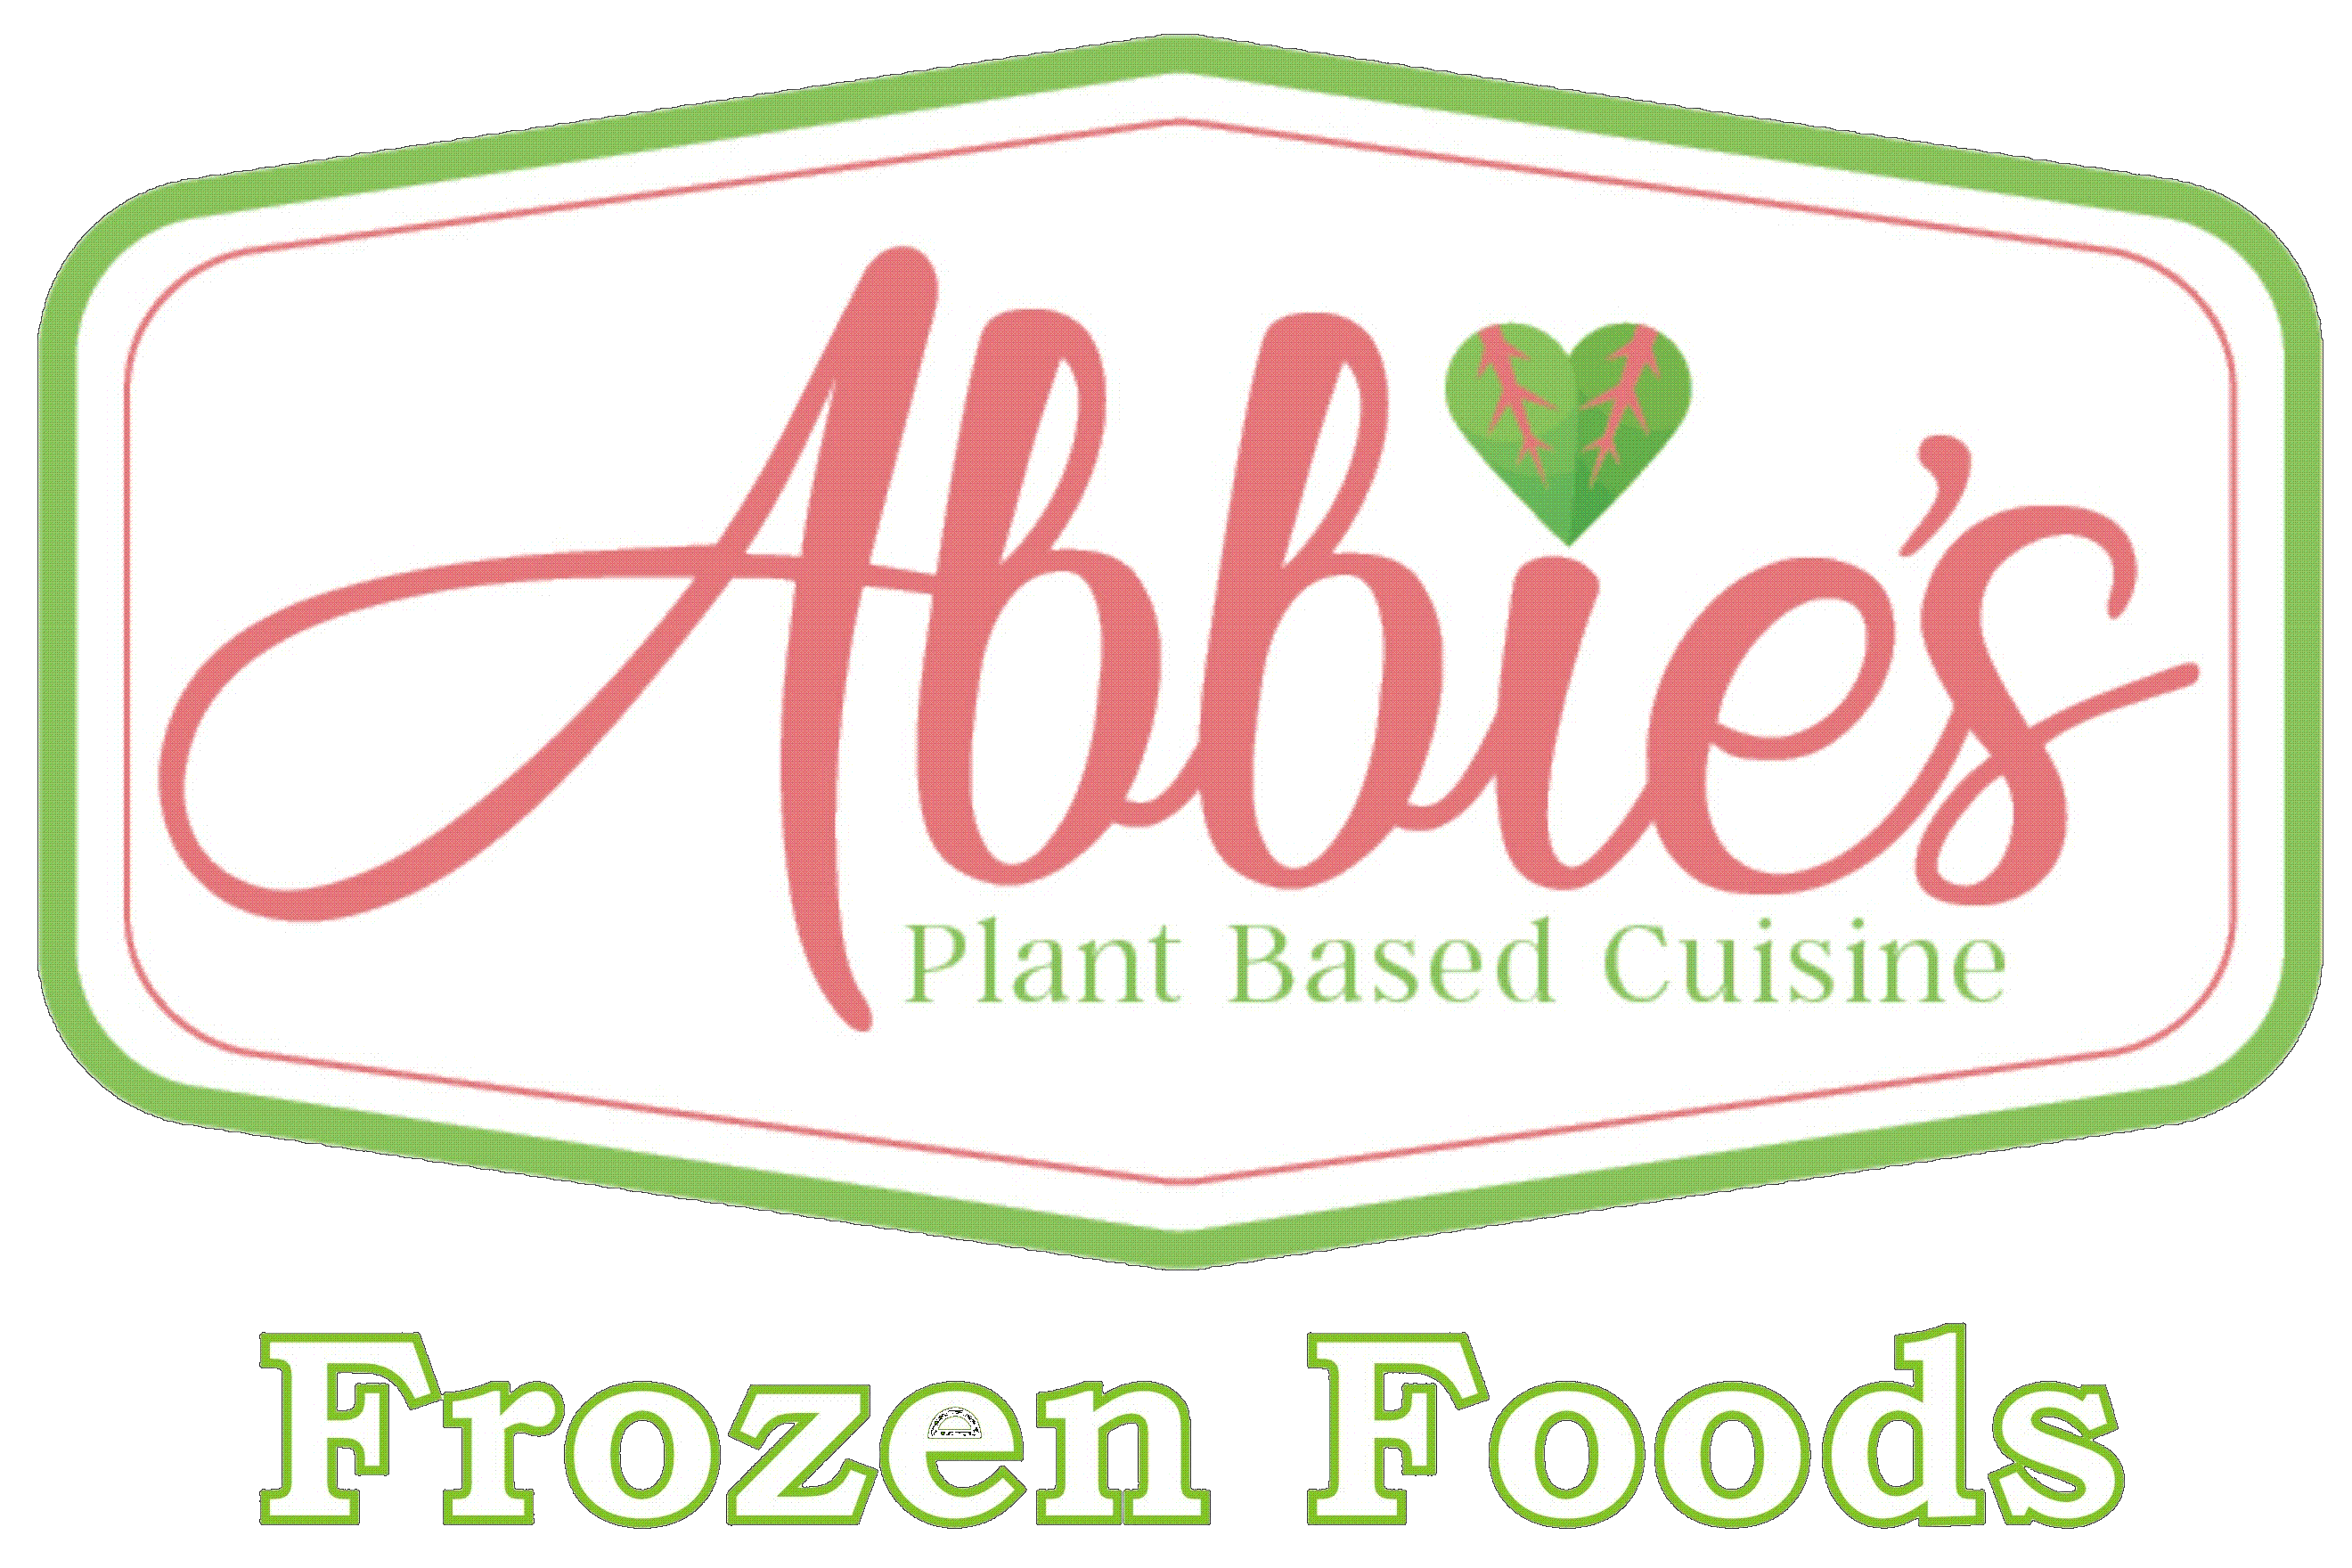 Abbie's Plant Based Cuisine's Frozen Foods